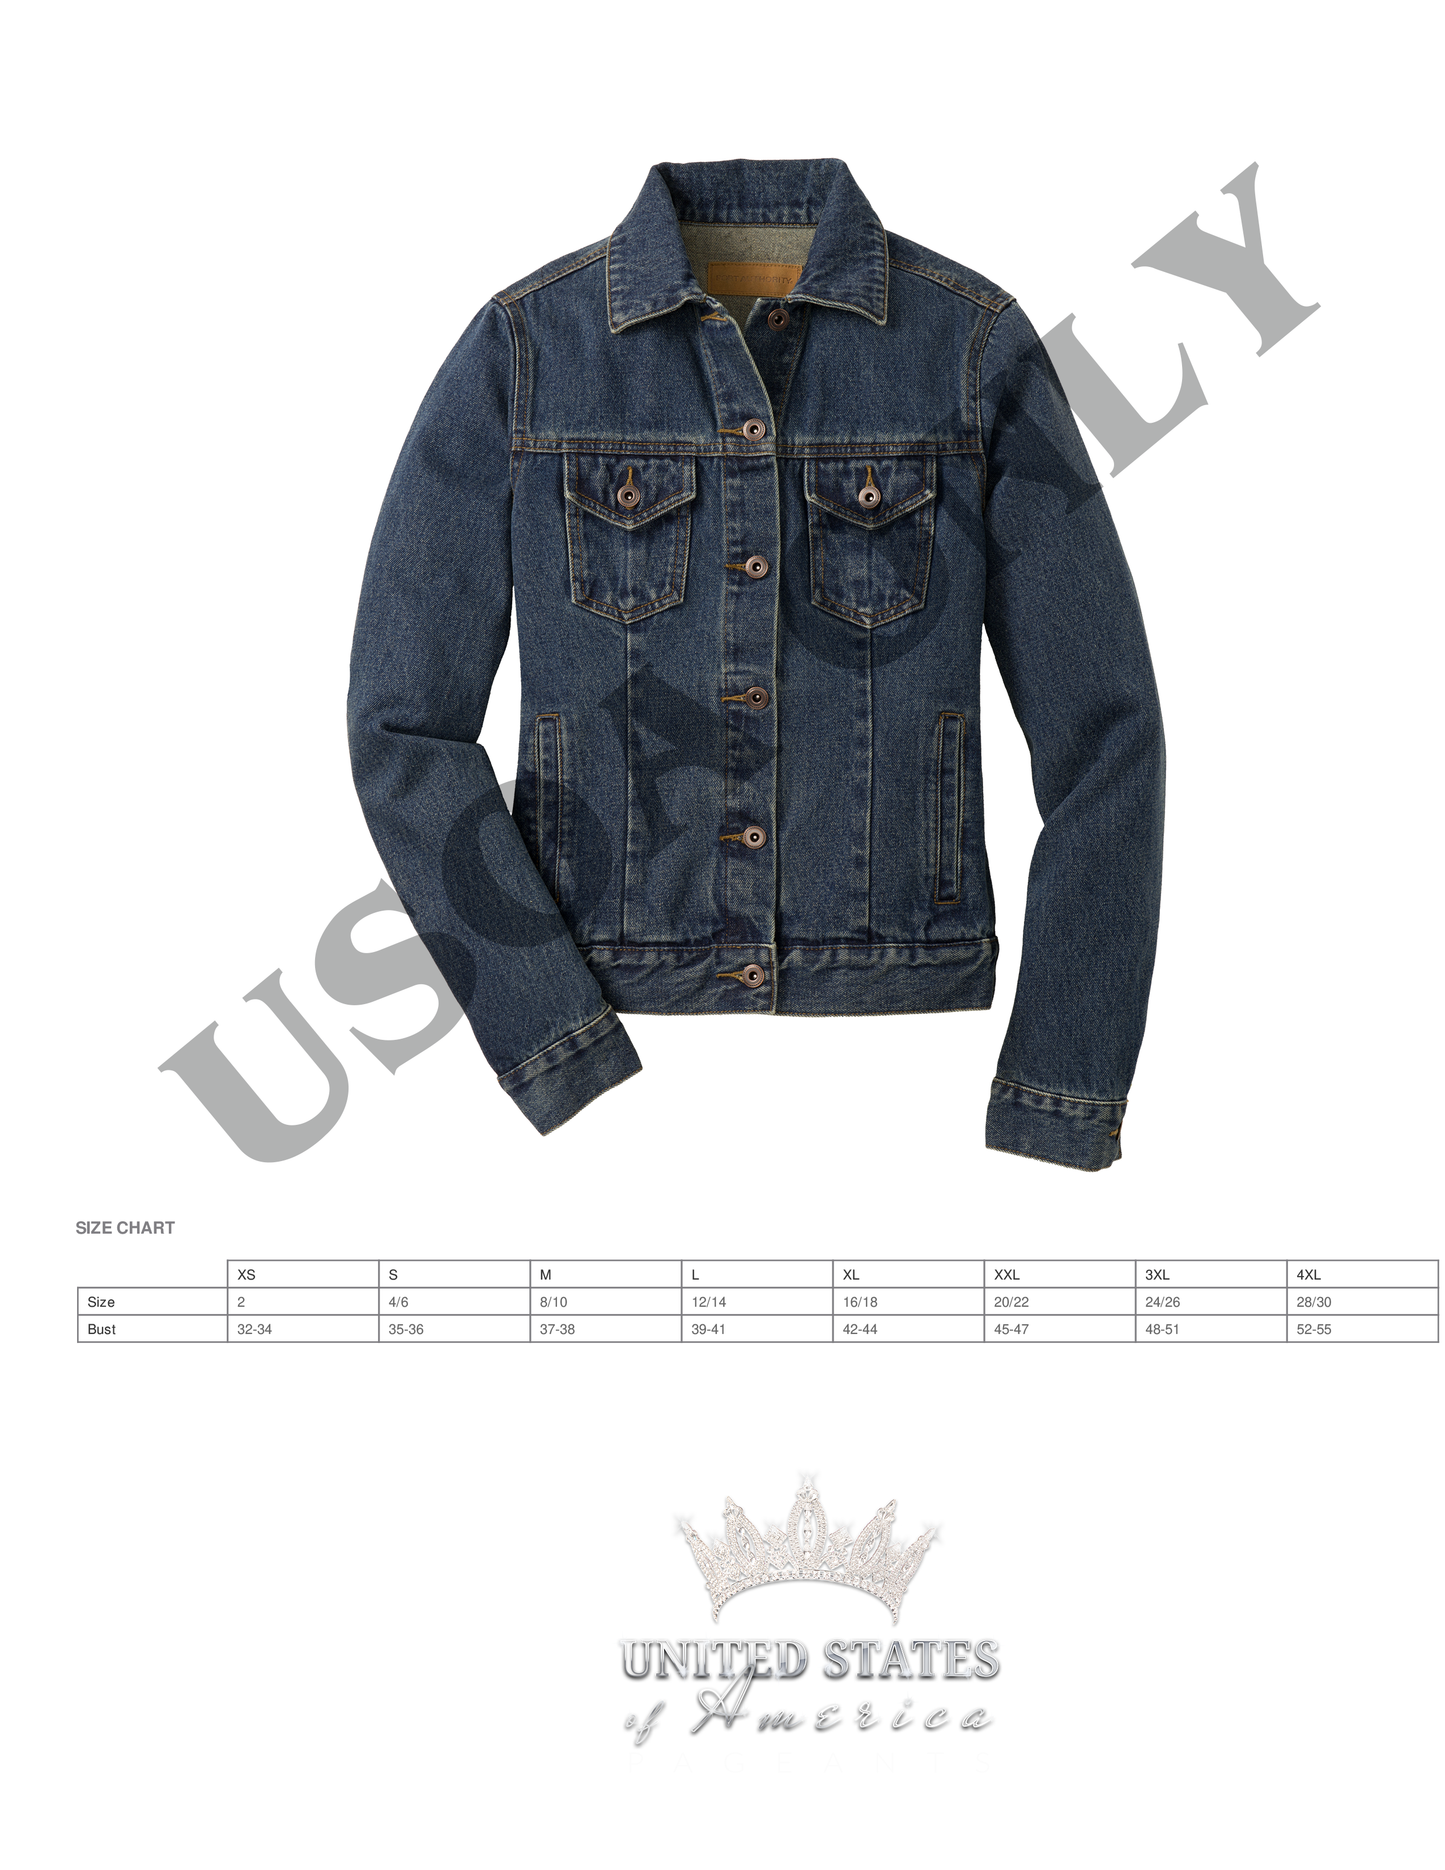 USOA Denim Crown Jacket